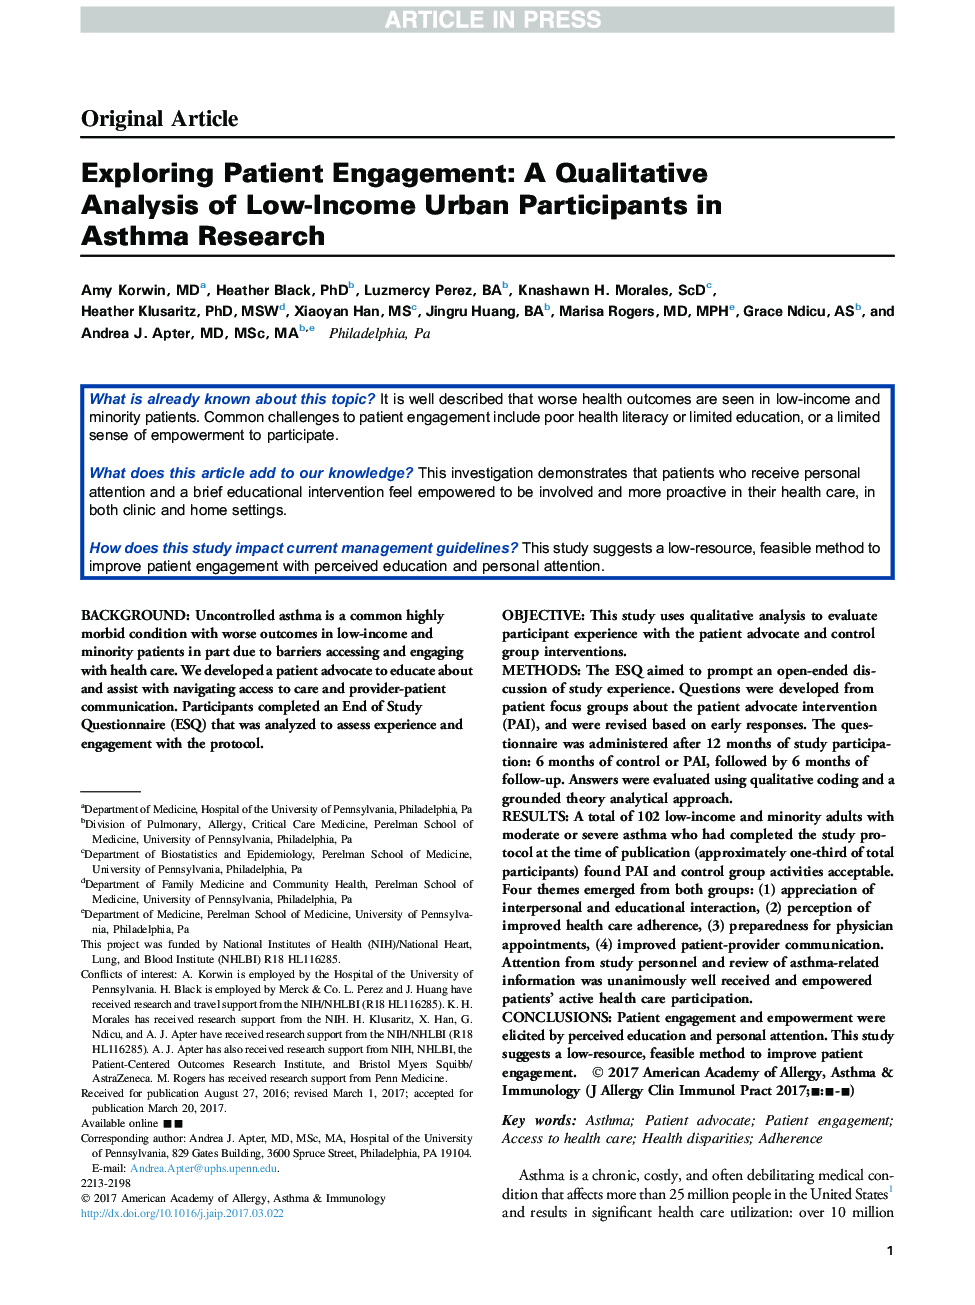 بررسی مشارکت بیمار: یک تحلیل کیفی از شرکت کنندگان کم درآمد شهری در تحقیقات آسم 